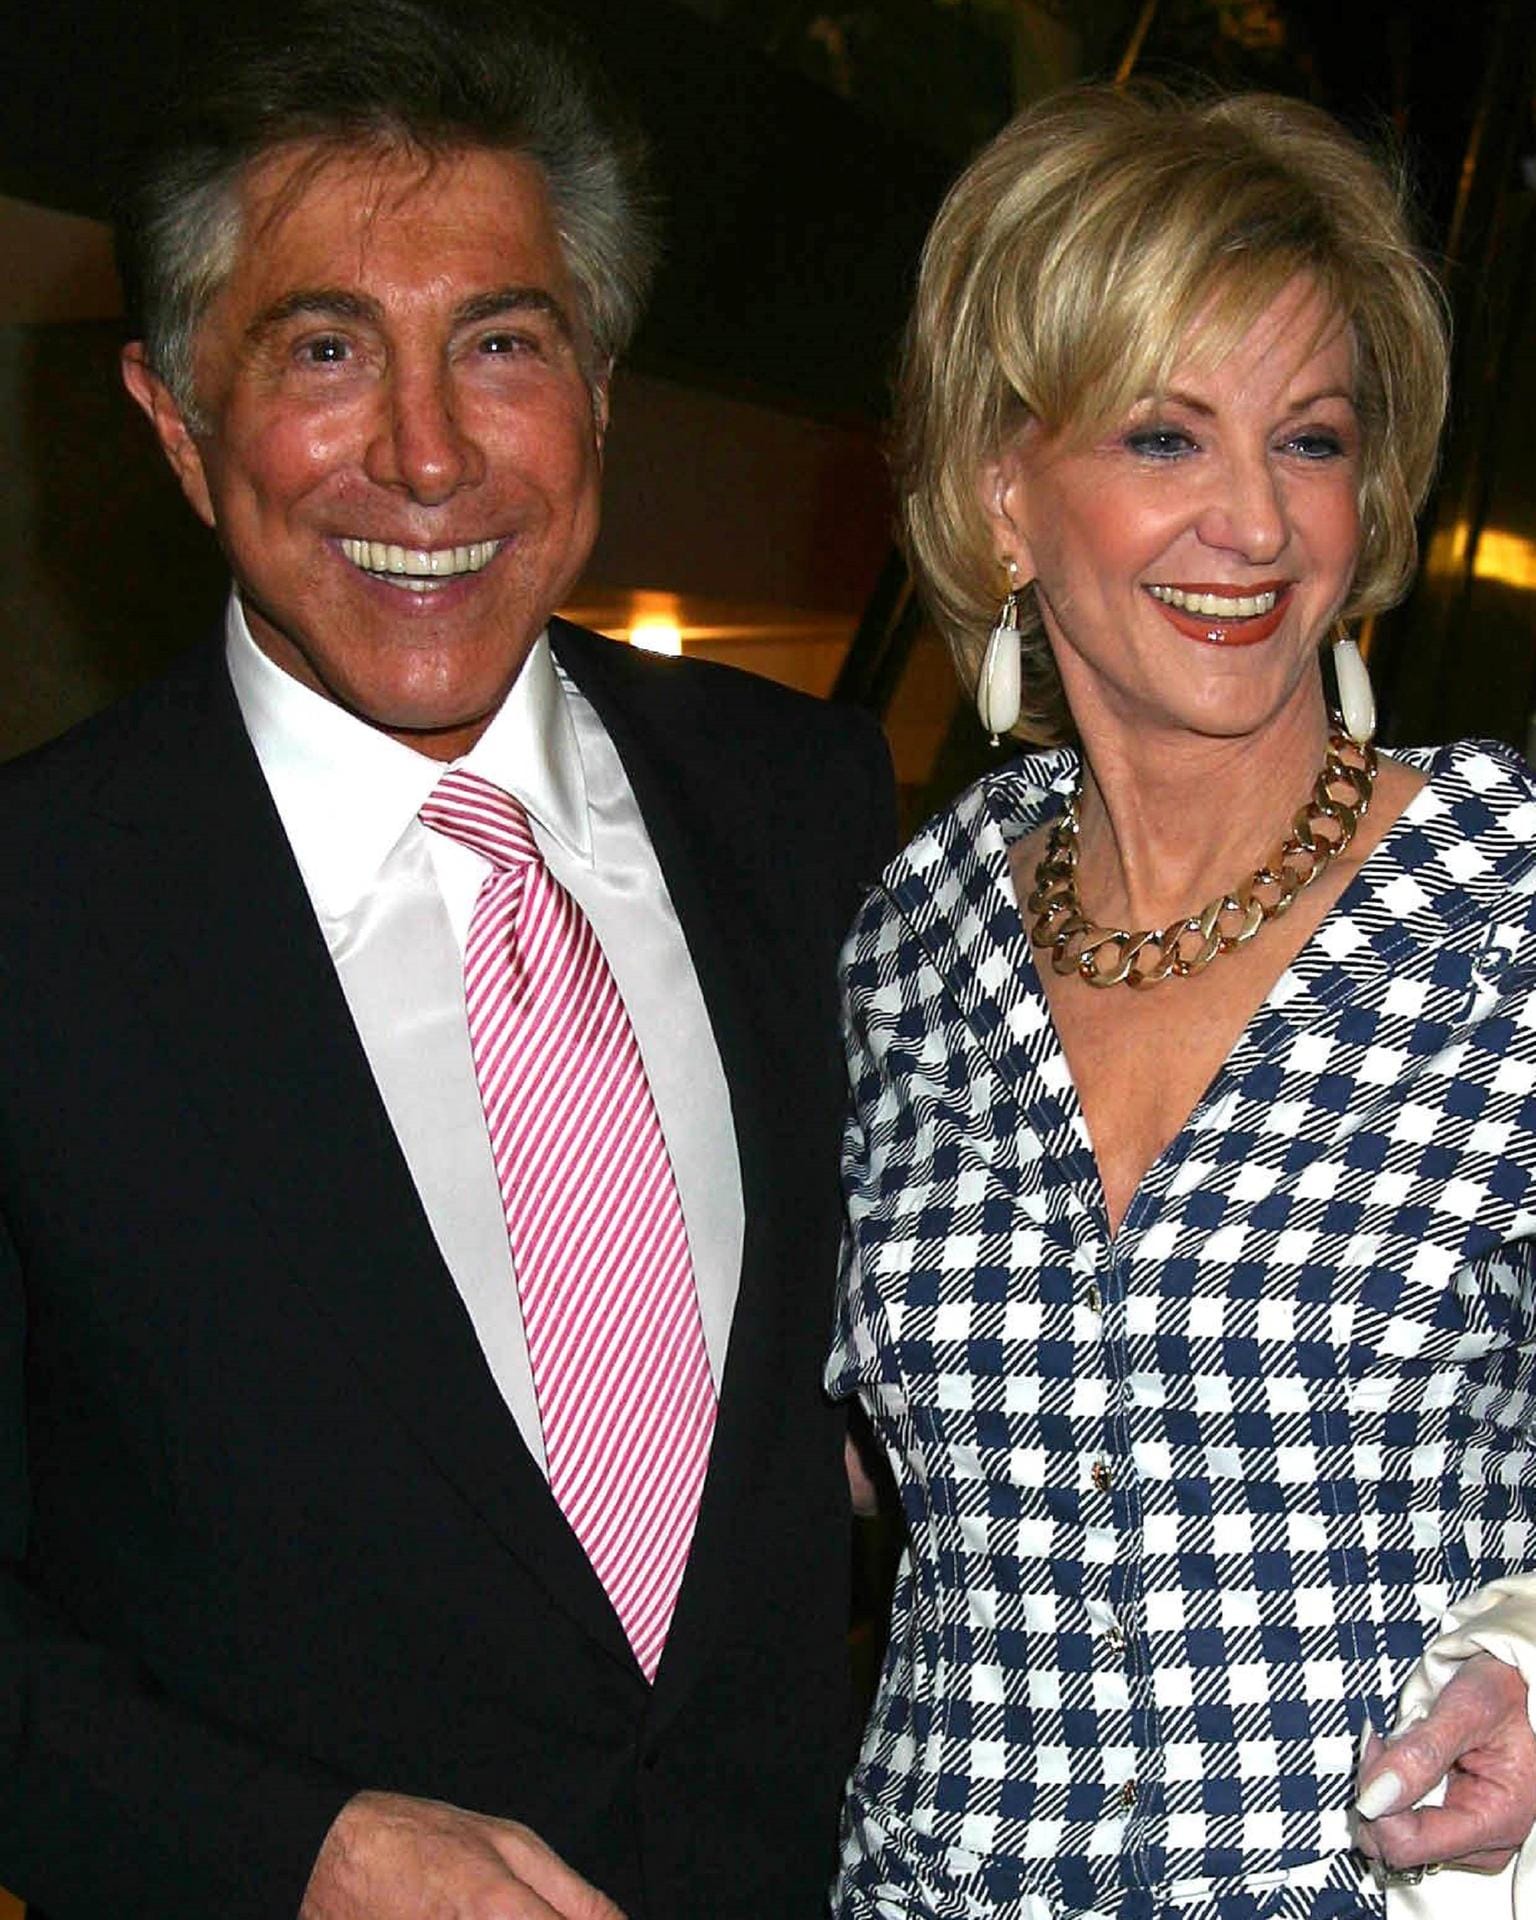 Steve und Elaine Wynn: Der Casino-Mogul und seine Frau ließen sich gleich zwei Mal scheiden – 1986 und 2010. Nach den Scheidungen wurde seine Frau mit etwa 645 Millionen Euro in Aktien entschädigt.